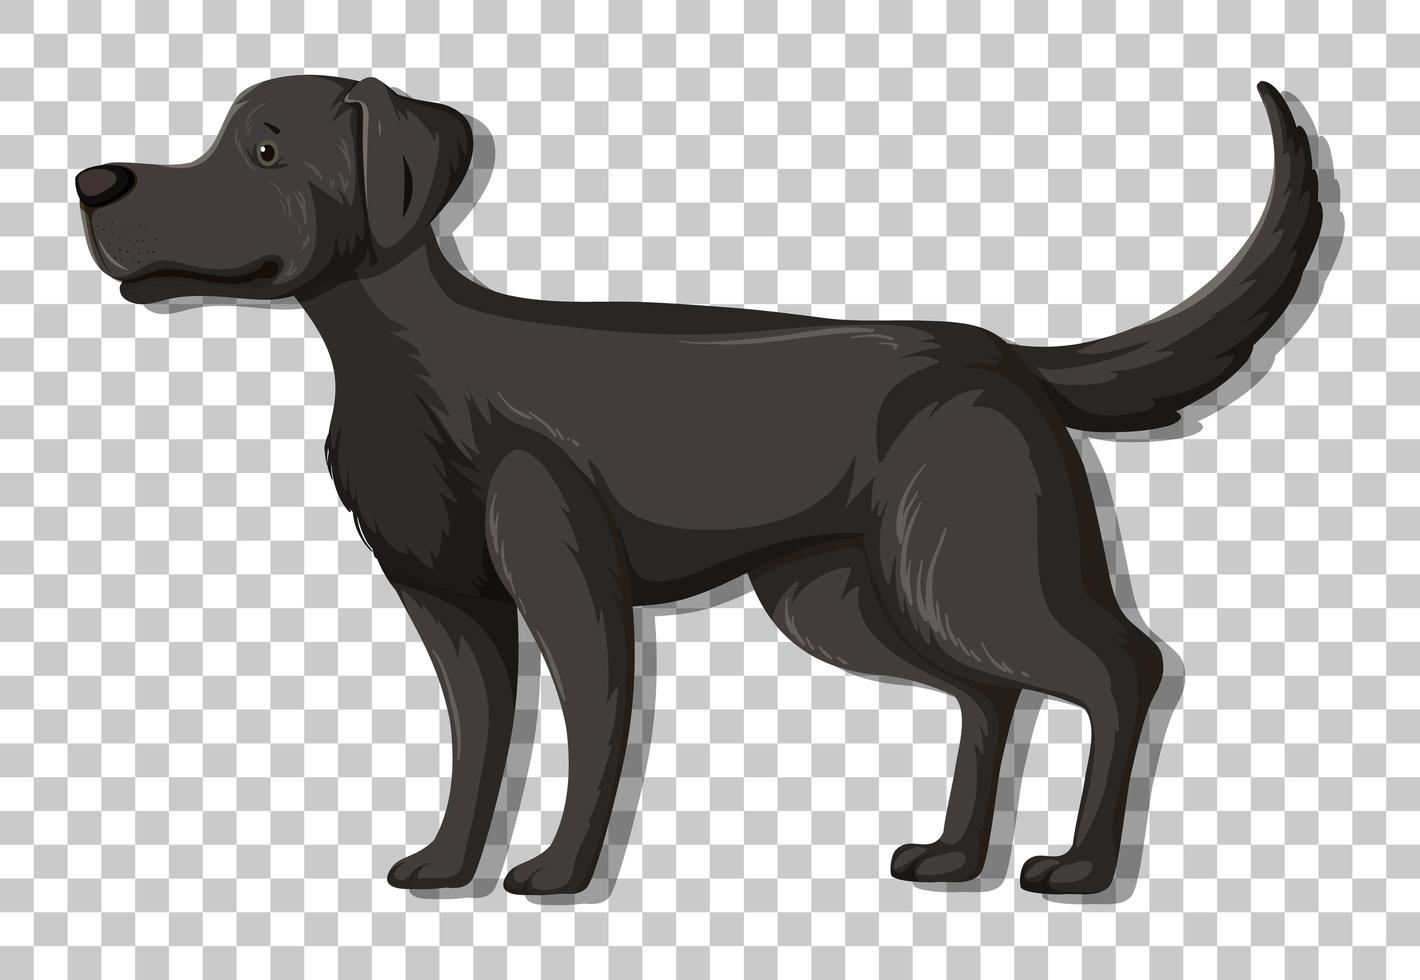 schwarzer Labrador Retriever in stehender Position Zeichentrickfigur isoliert auf transparentem Hintergrund vektor